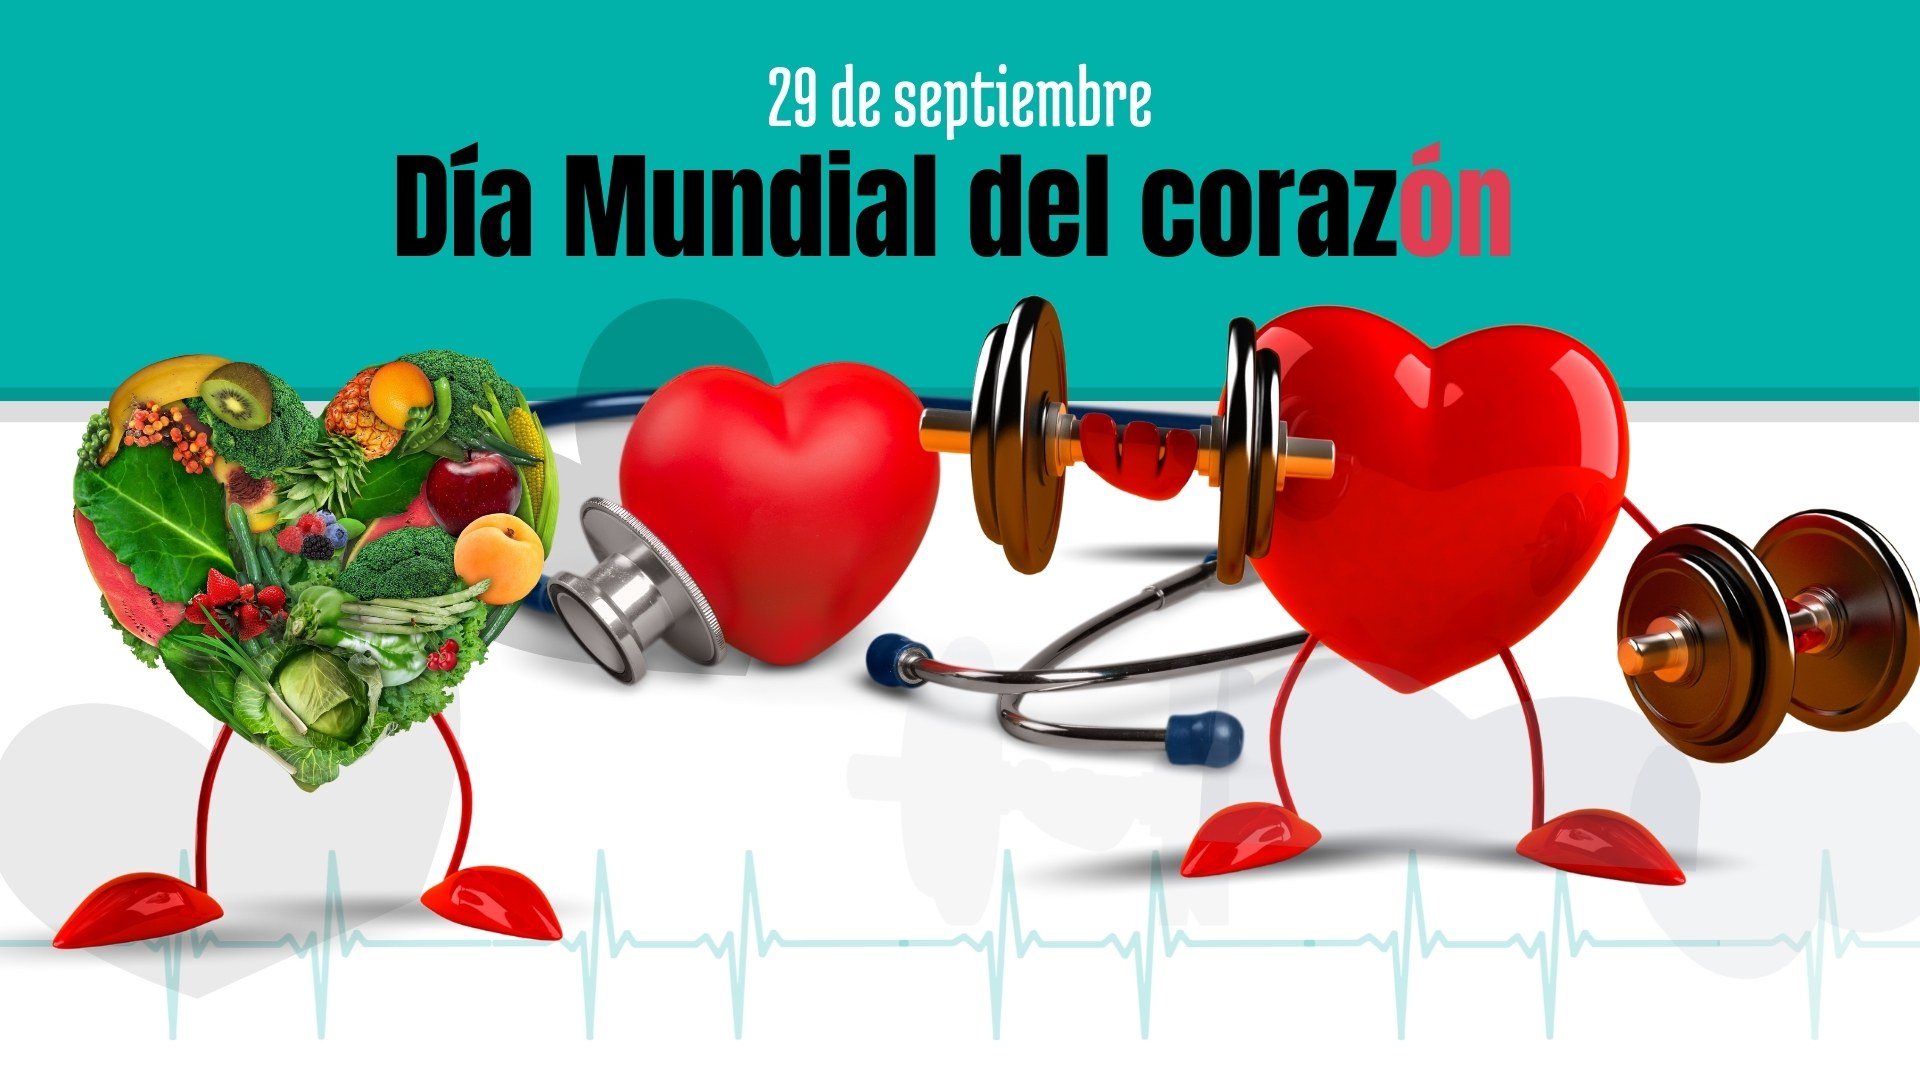 Día Mundial del corazón